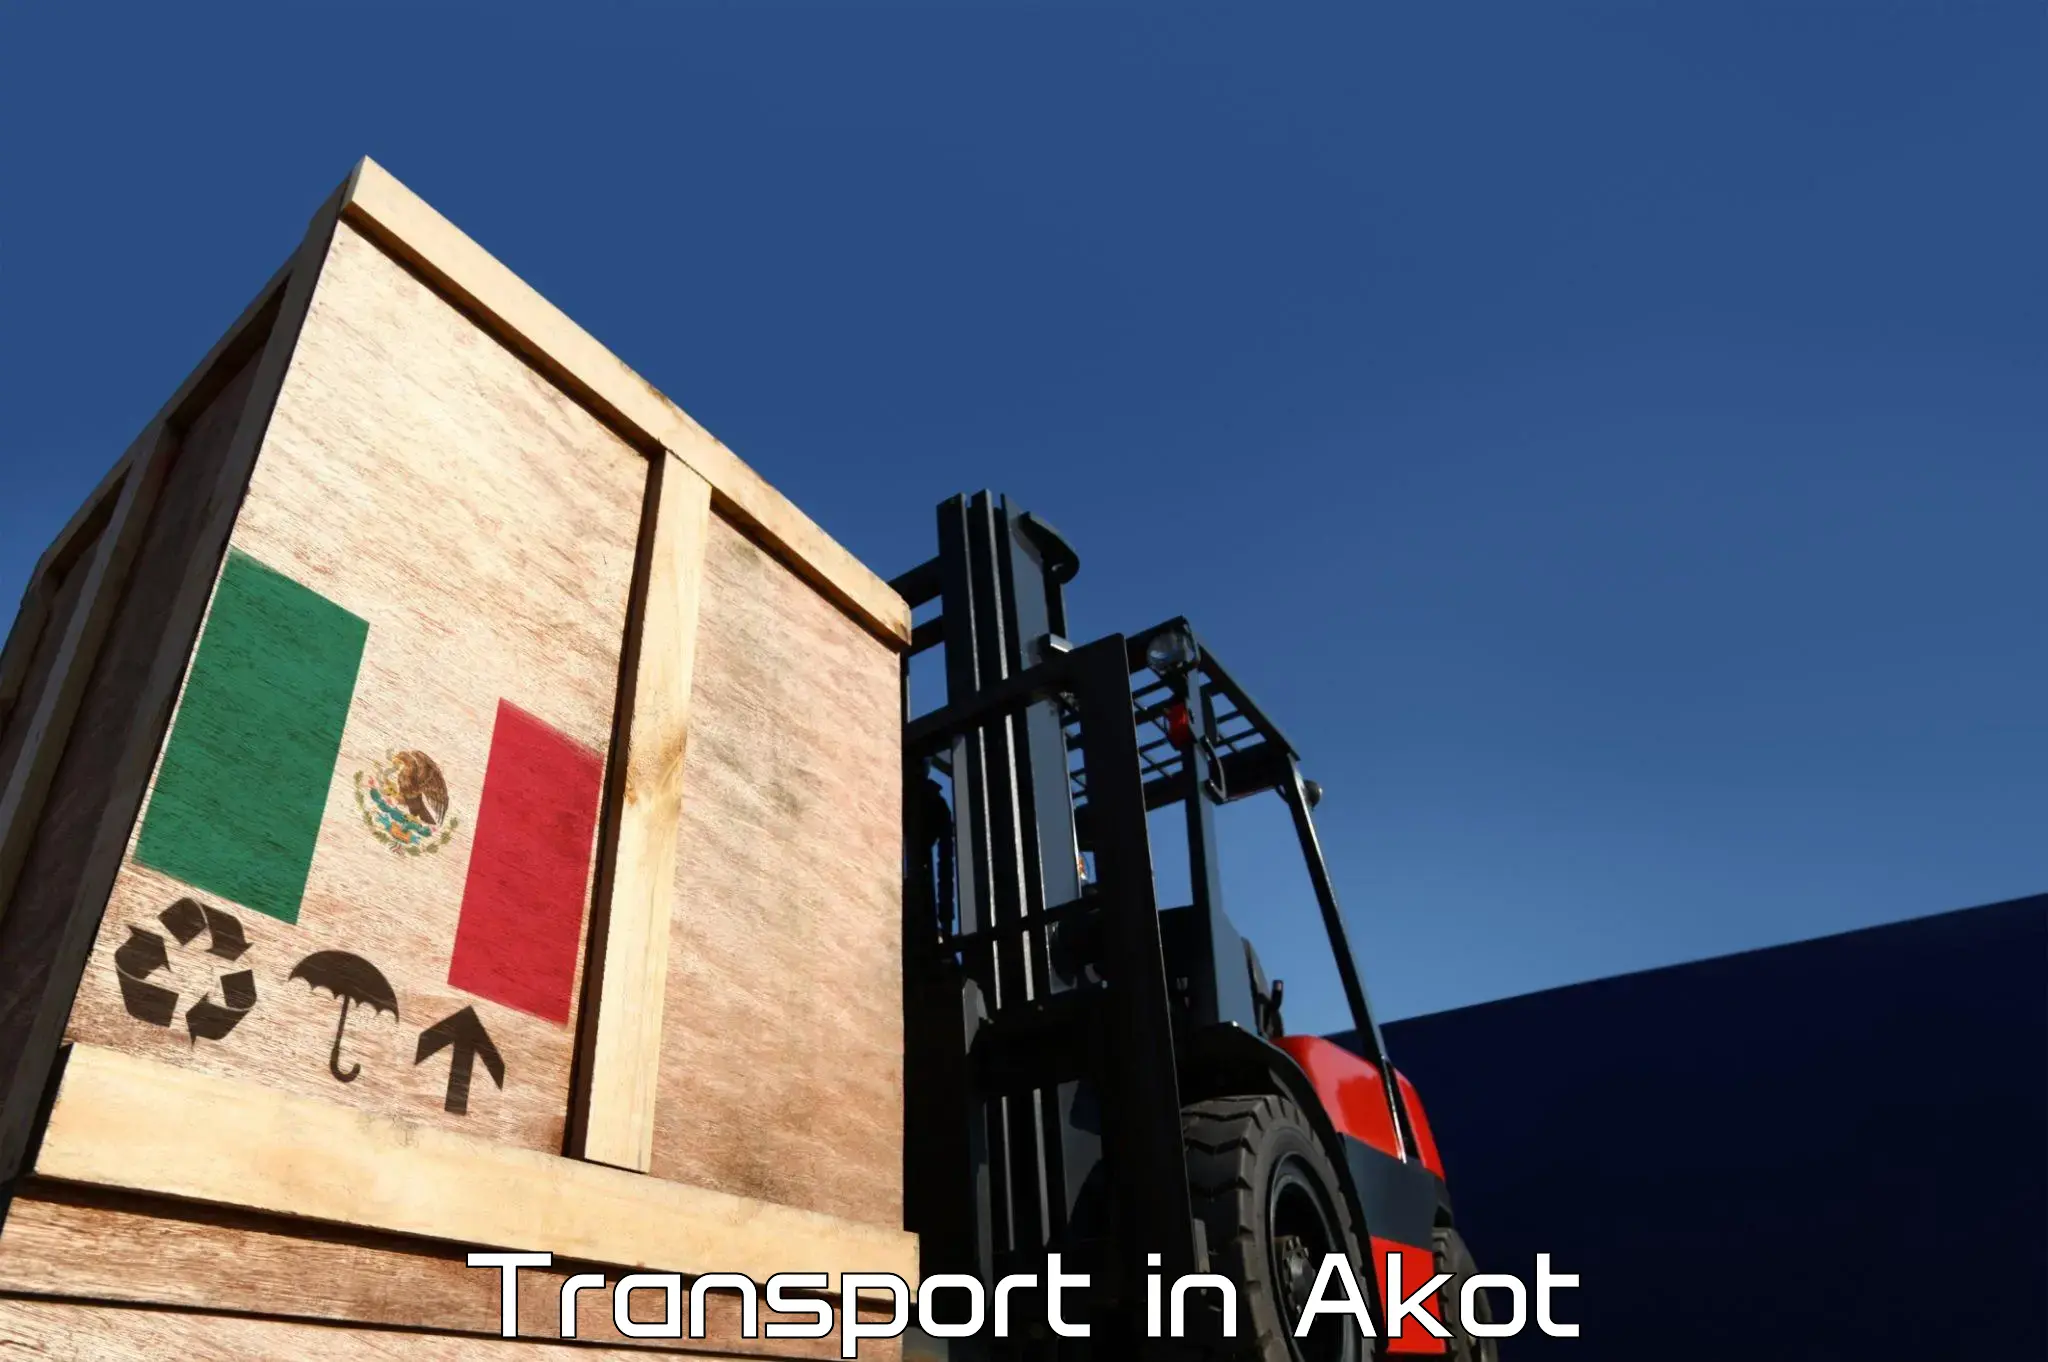 Nearest transport service in Akot